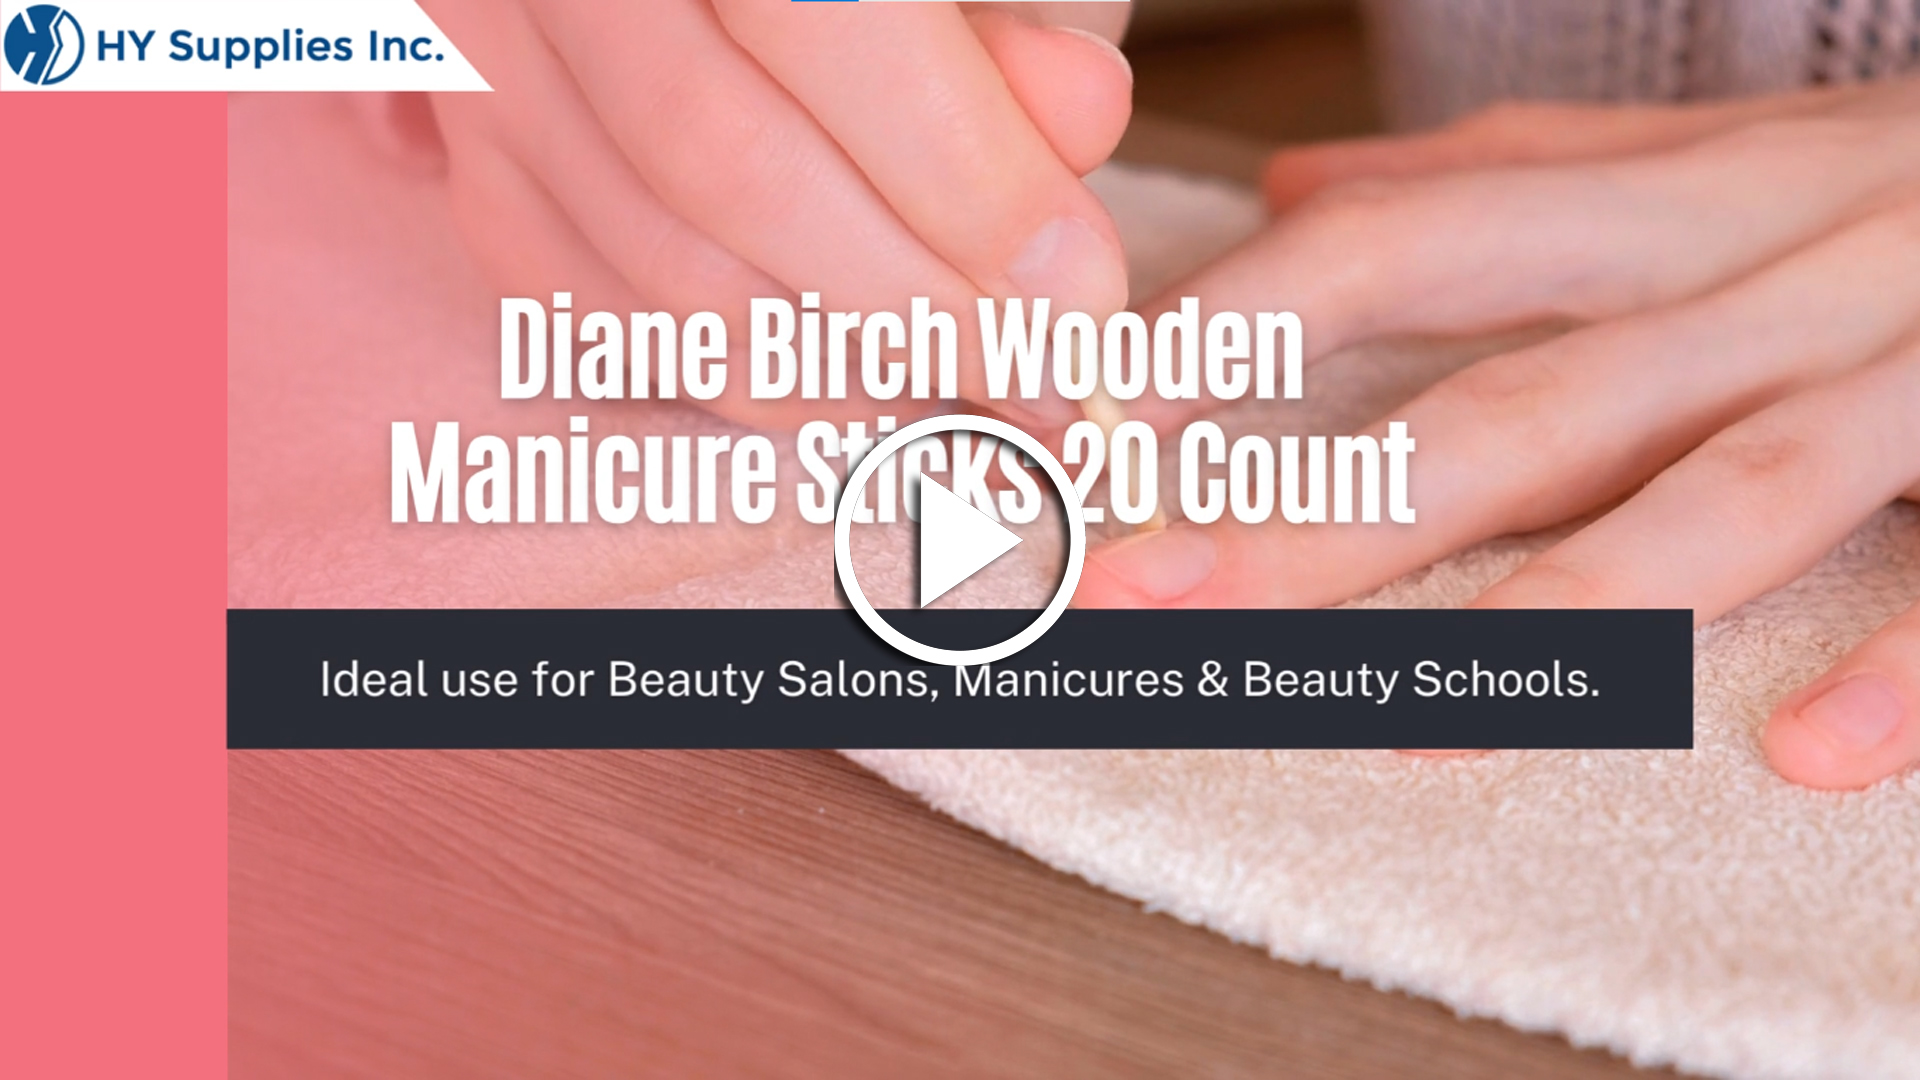 Diane Birch Wooden Manicure Sticks 20 Count